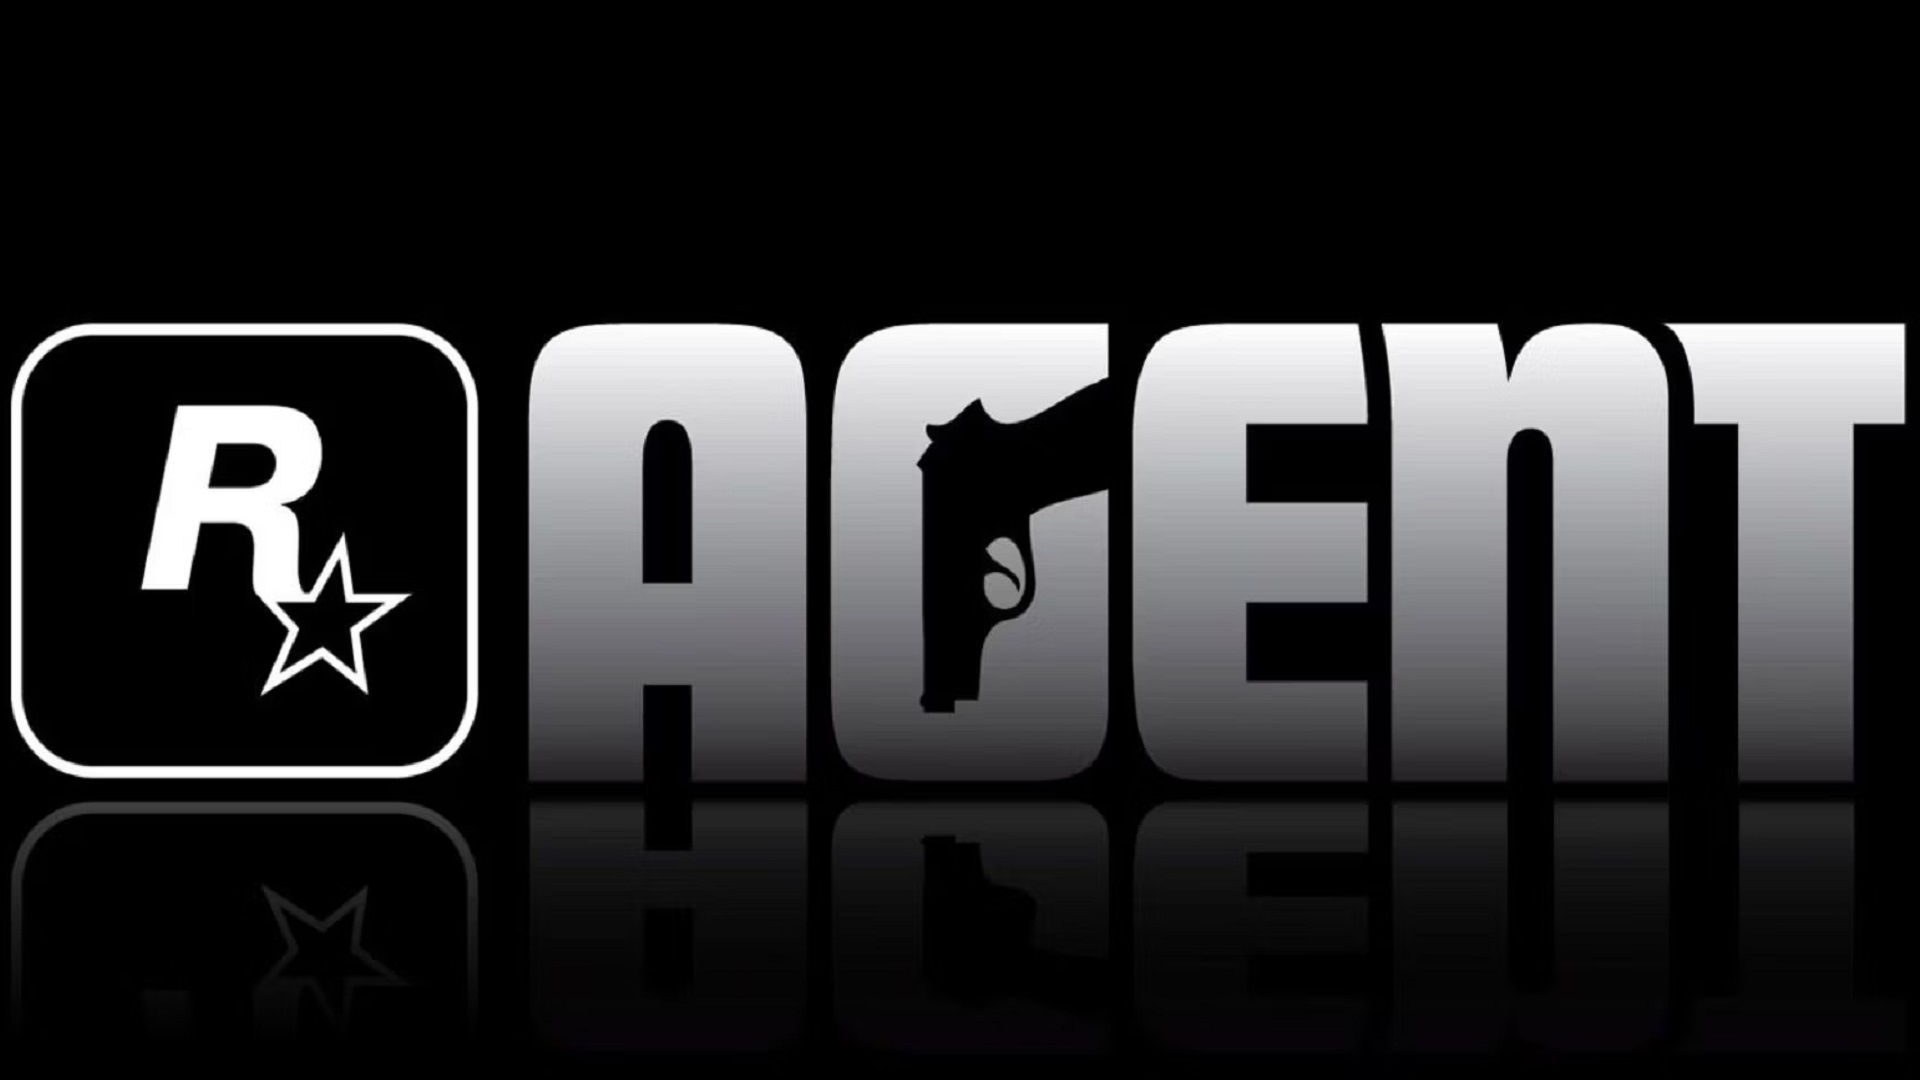 احتمالا هیچگاه نفهمیم چه بر سر بازی Agent شرکت Rockstar Games آمده است